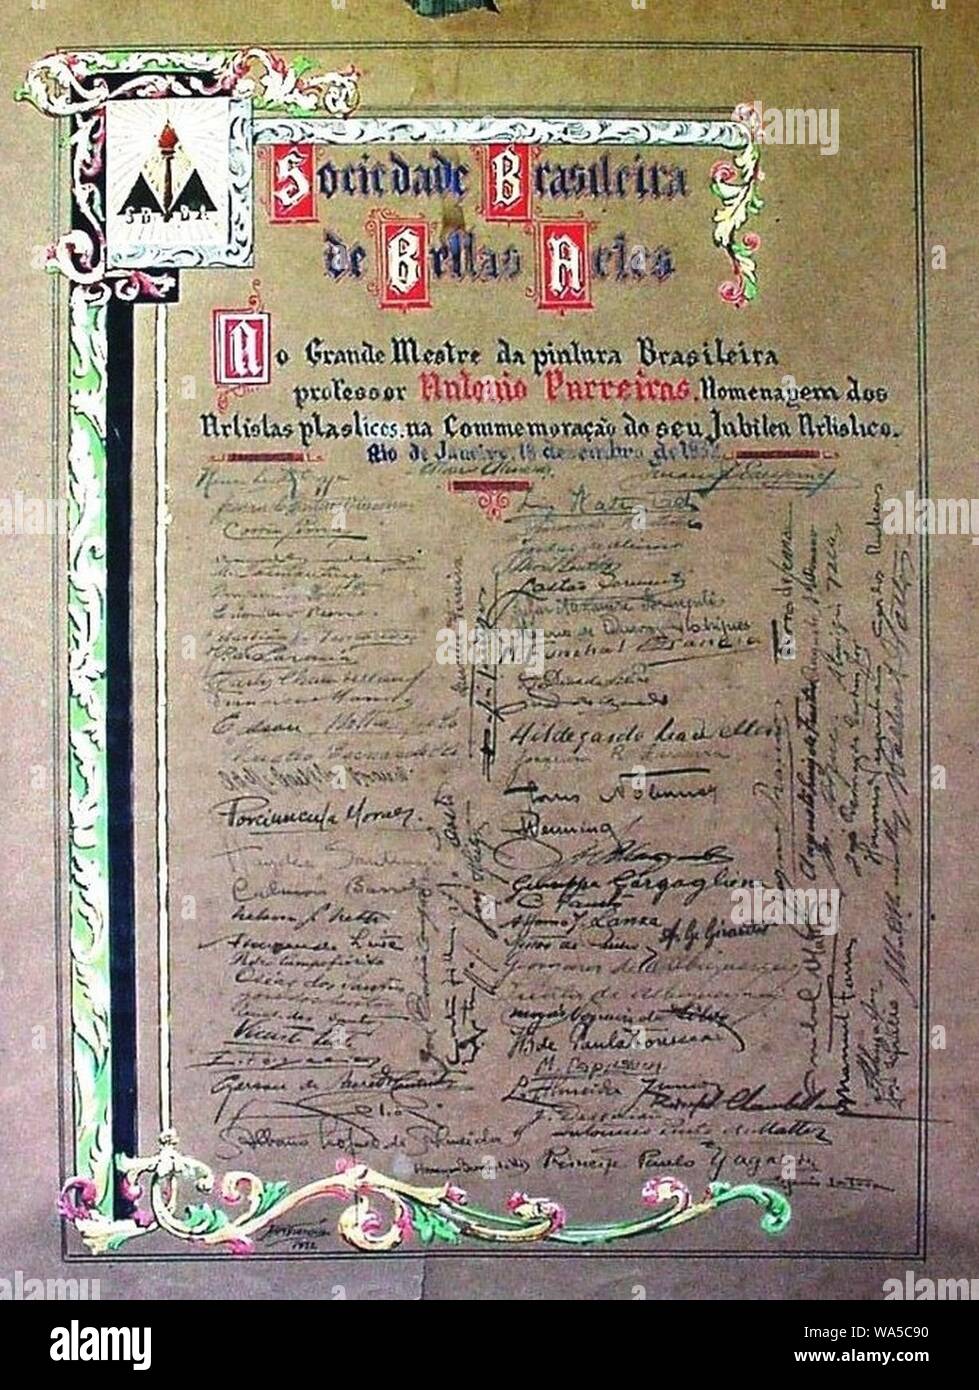 Diploma da Sociedade Brasileira de Belas Artes - Jubileu Artístico de Antônio Parreiras 1932. Stock Photo